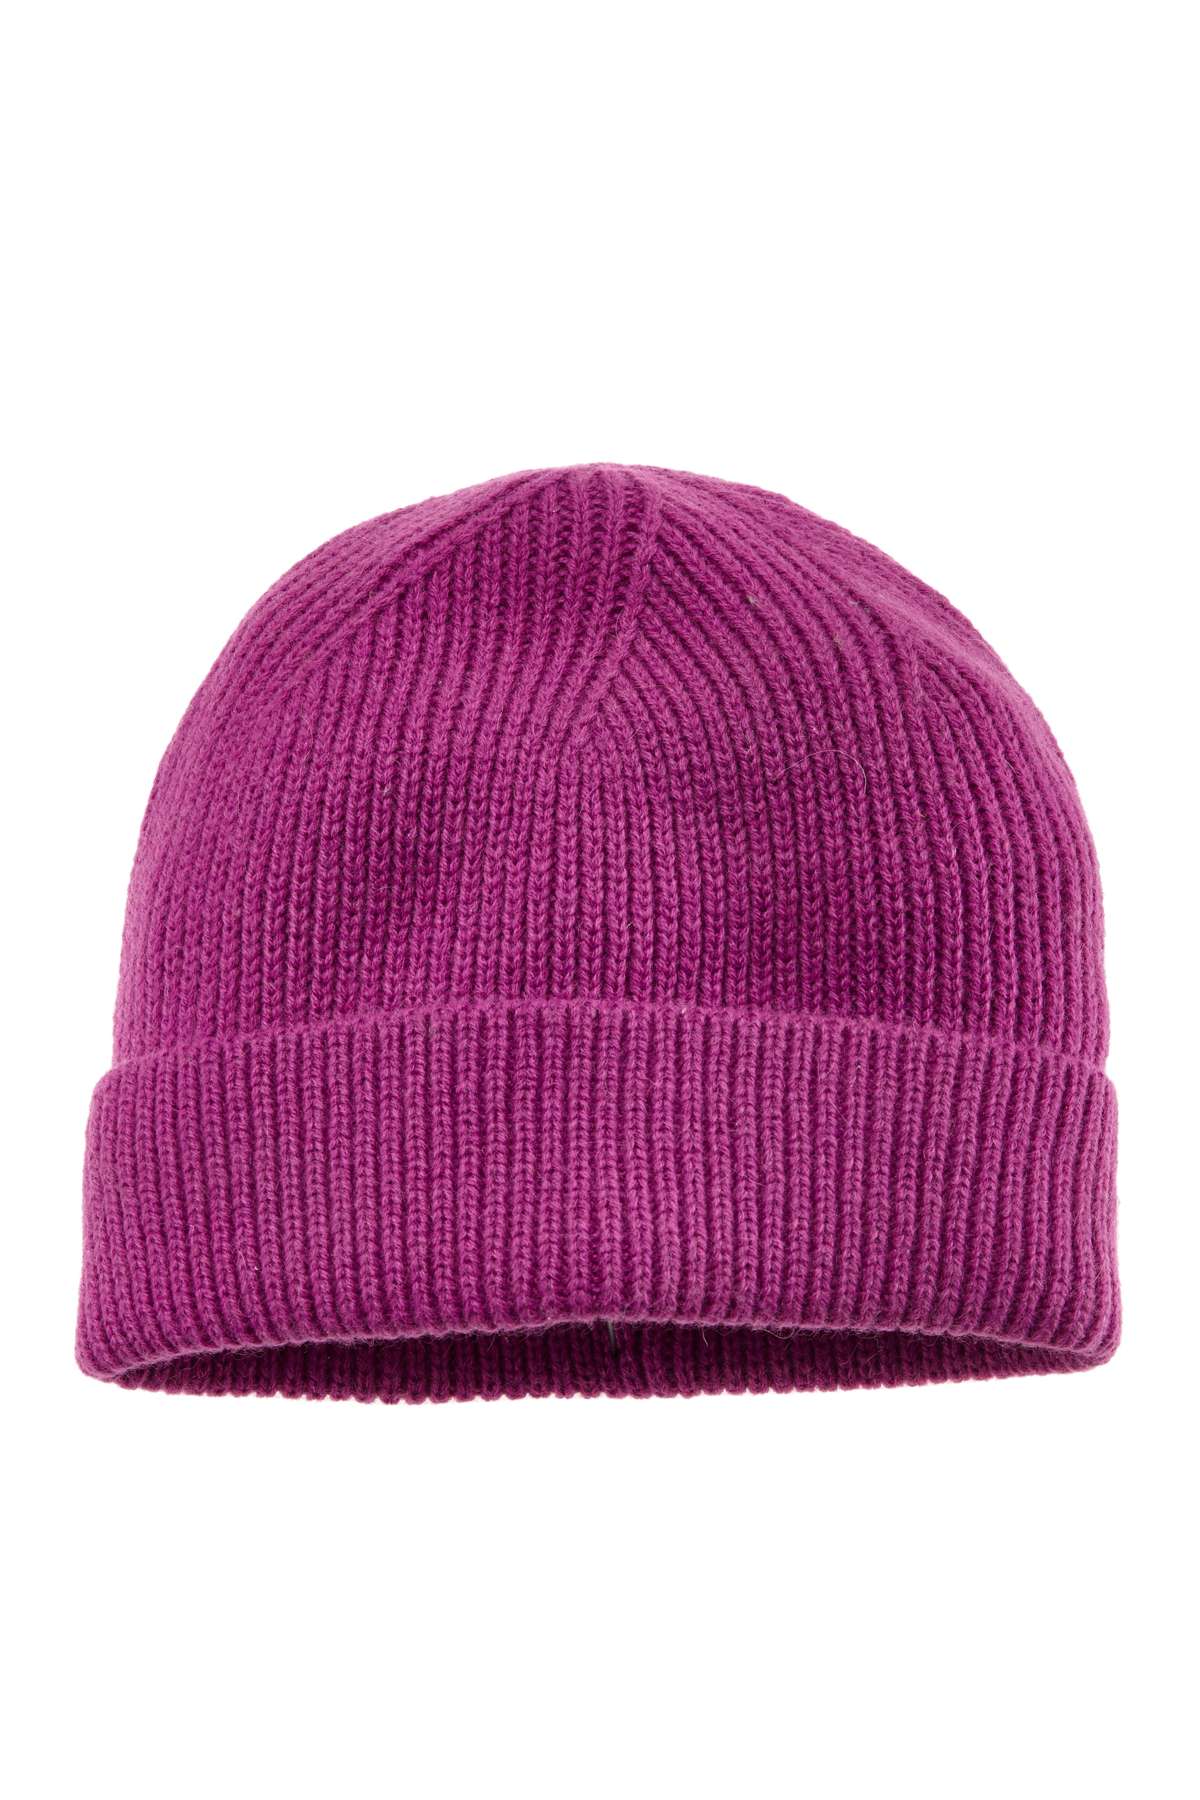 Вязаная шапка из смесовой шерсти с отворотом, шапка-бини, зимняя шапка, шапка из шерсти.